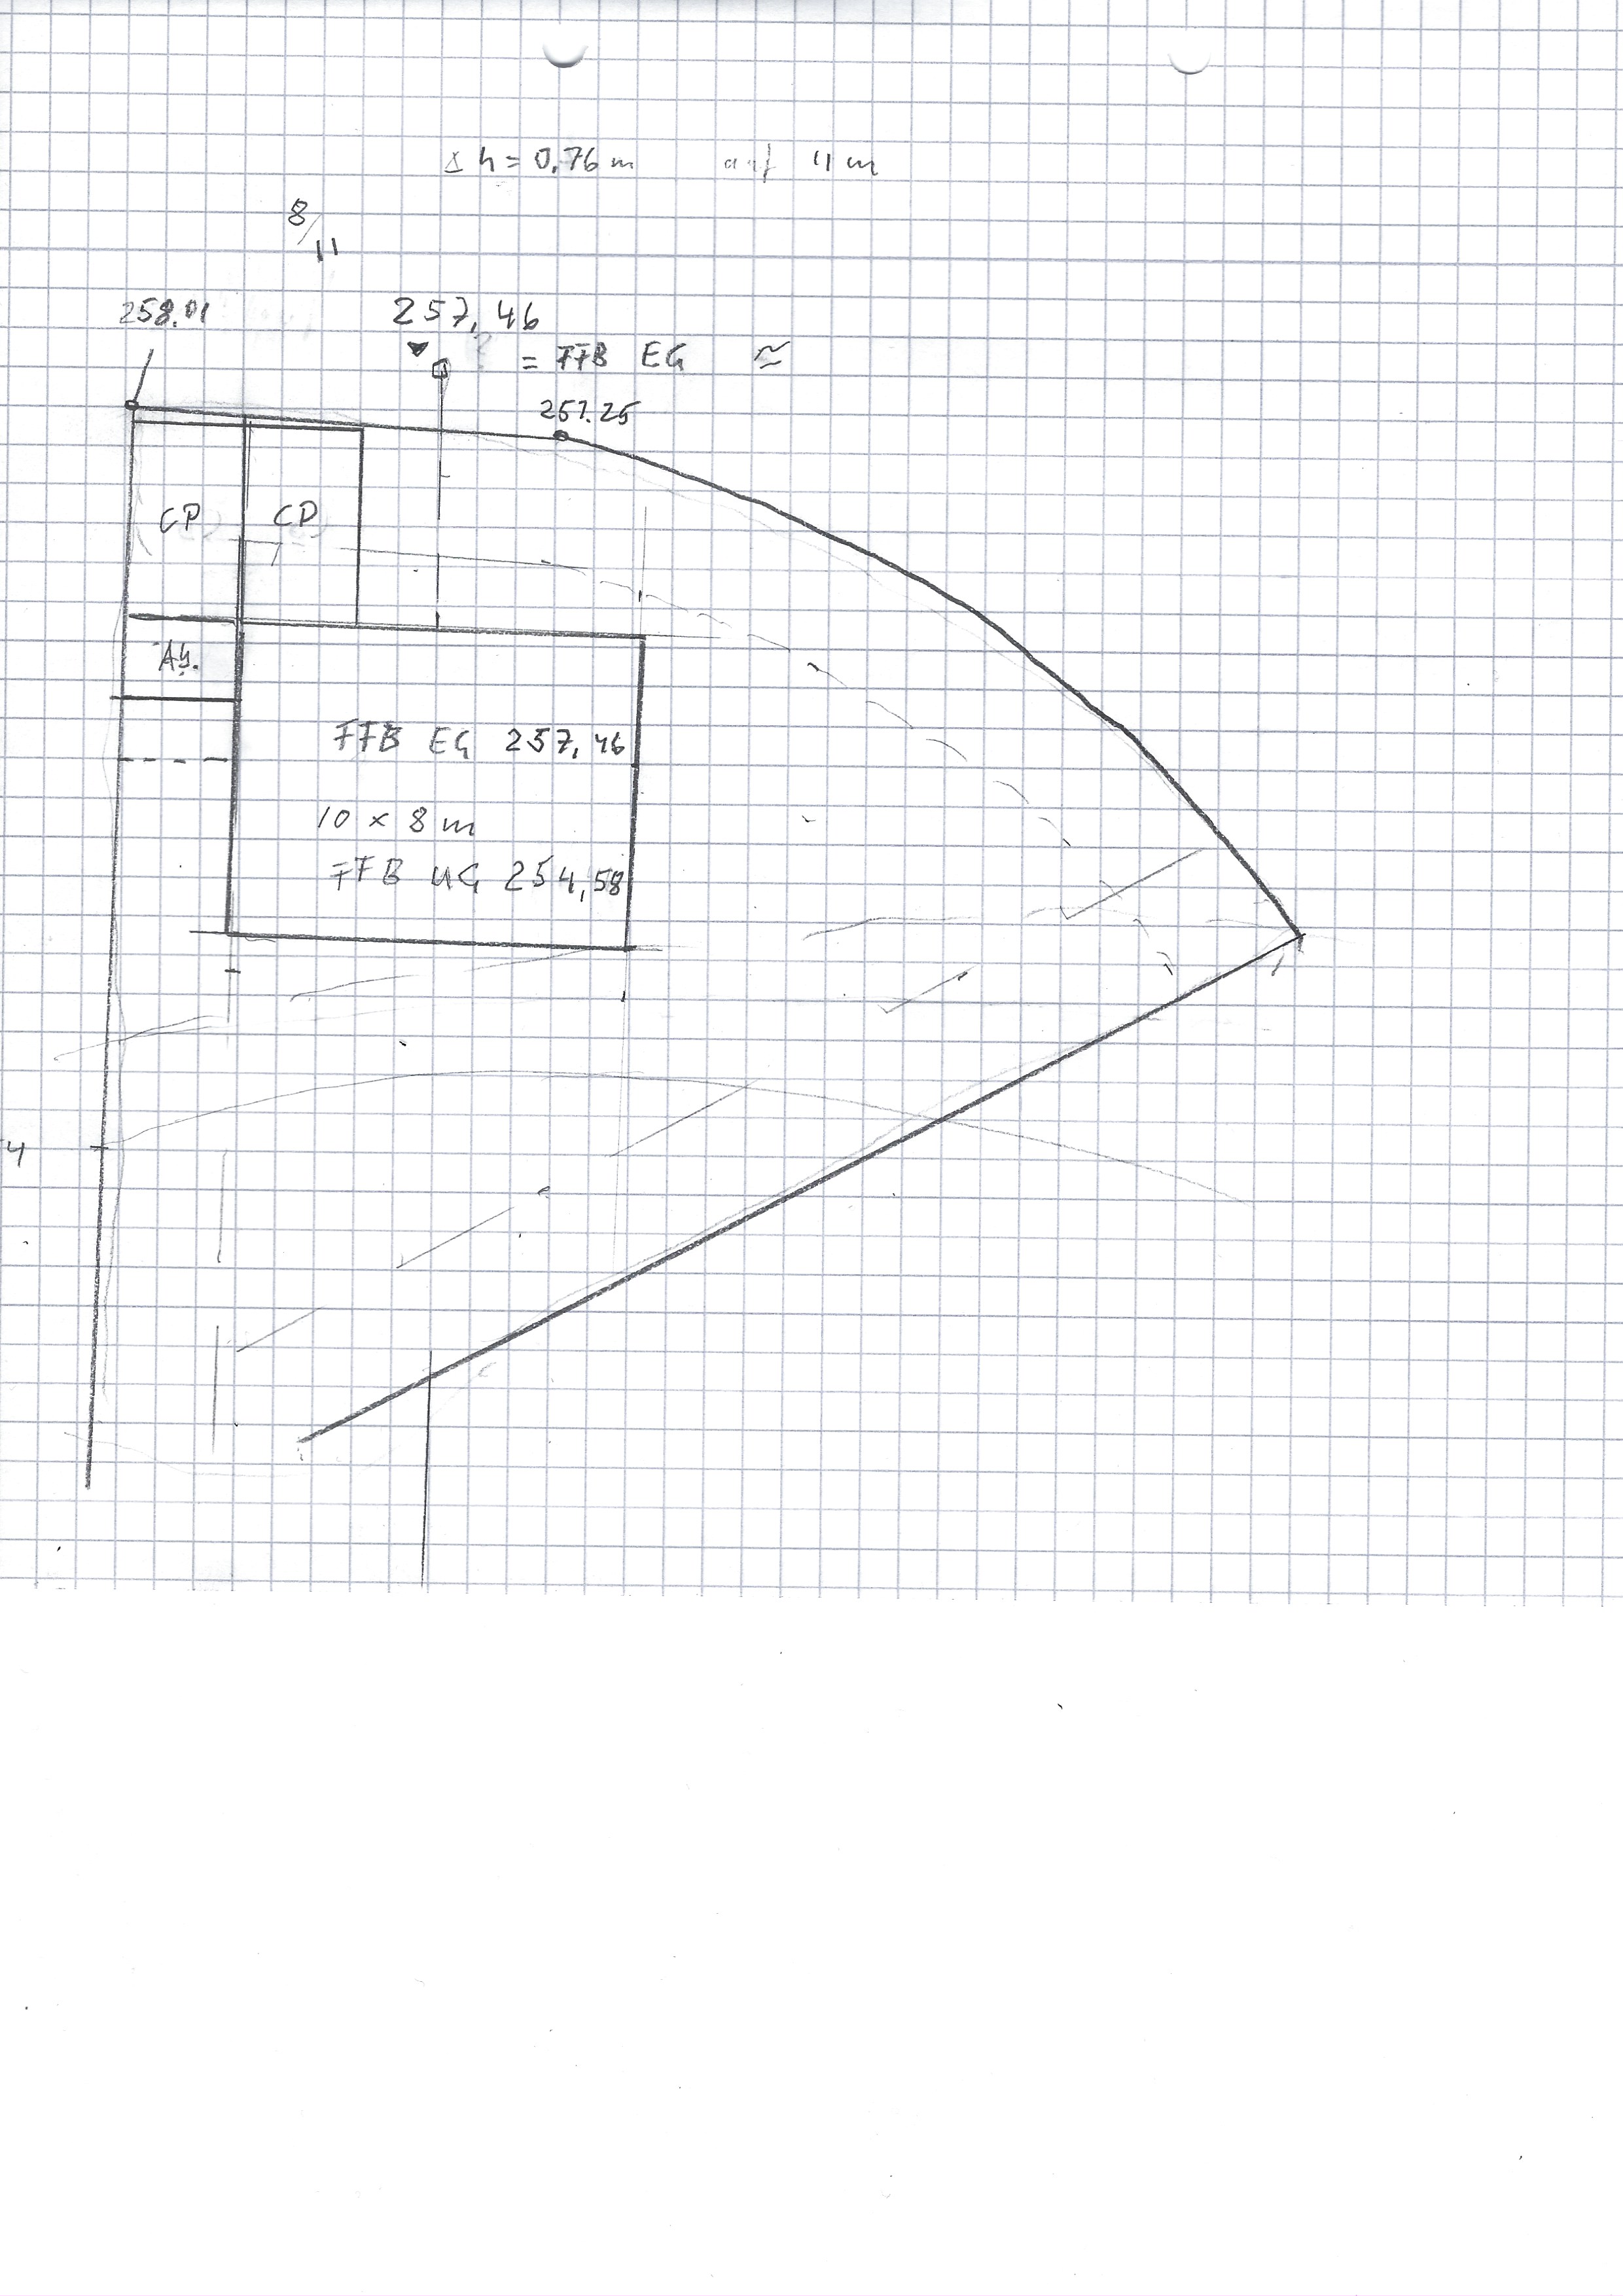 unser-hanglange-bodenplatte-vs-wohnkeller-473025-1.jpg